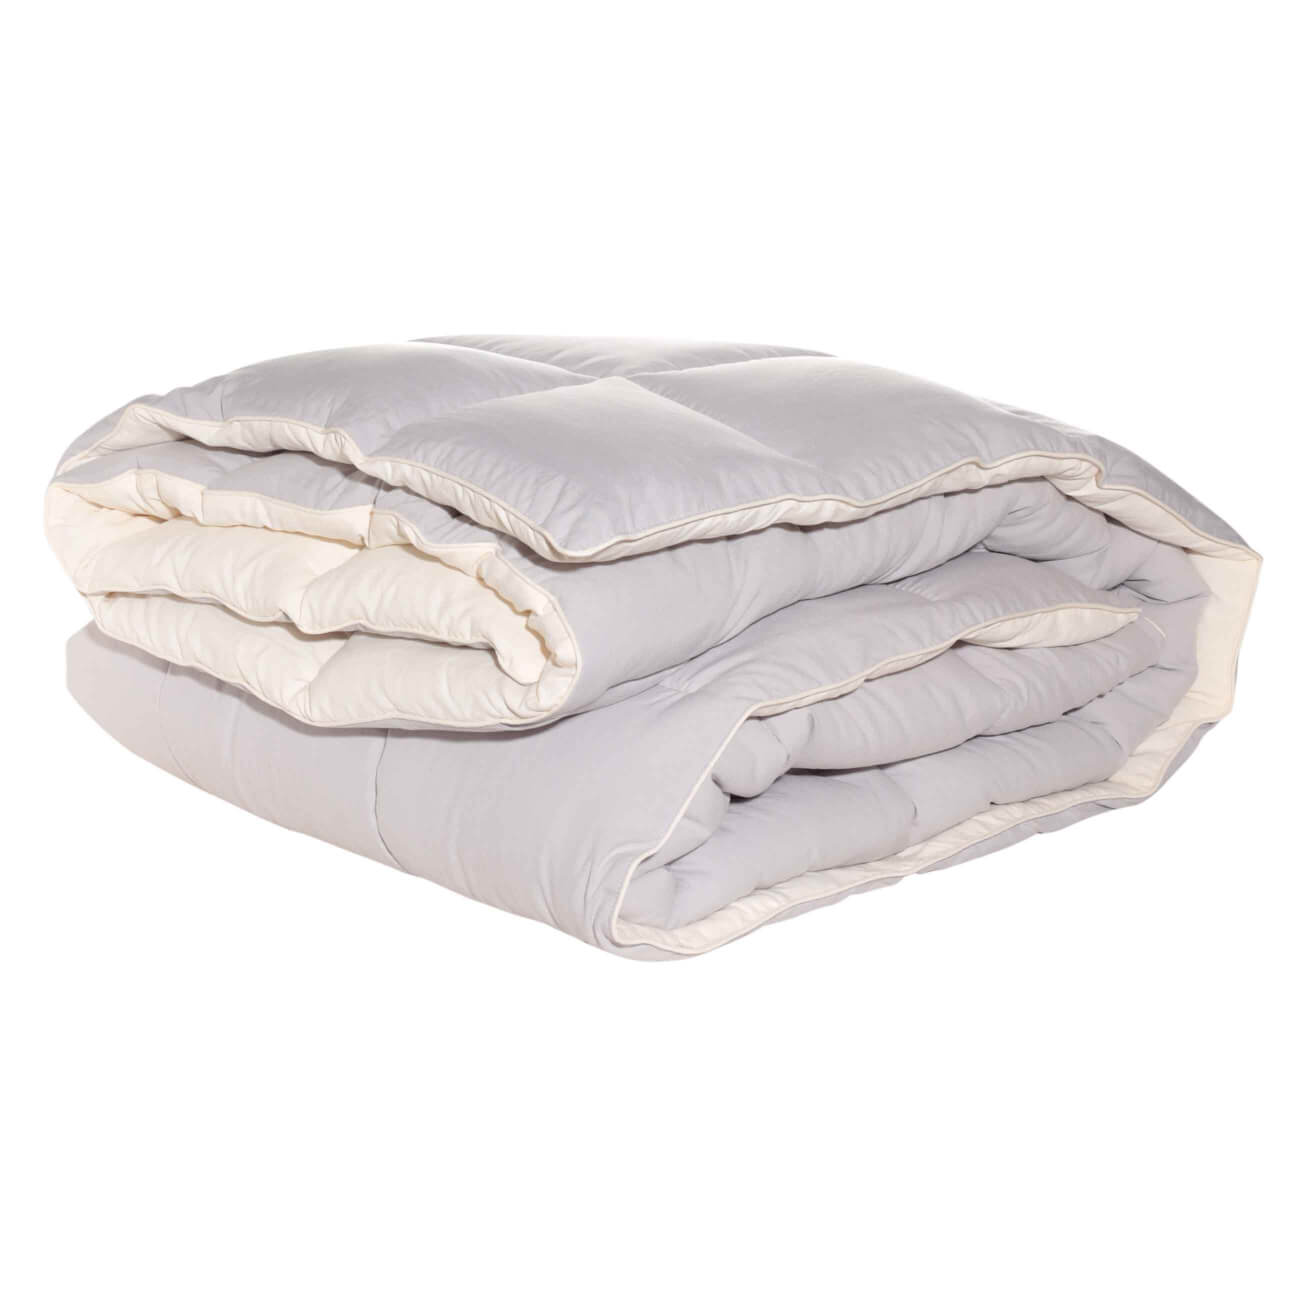 Одеяло, 140х200 см, микрофибра/холлофайбер, бежевое/молочное, Hollow fiber одеяло 140х200 см хлопок микрофибра soft cotton